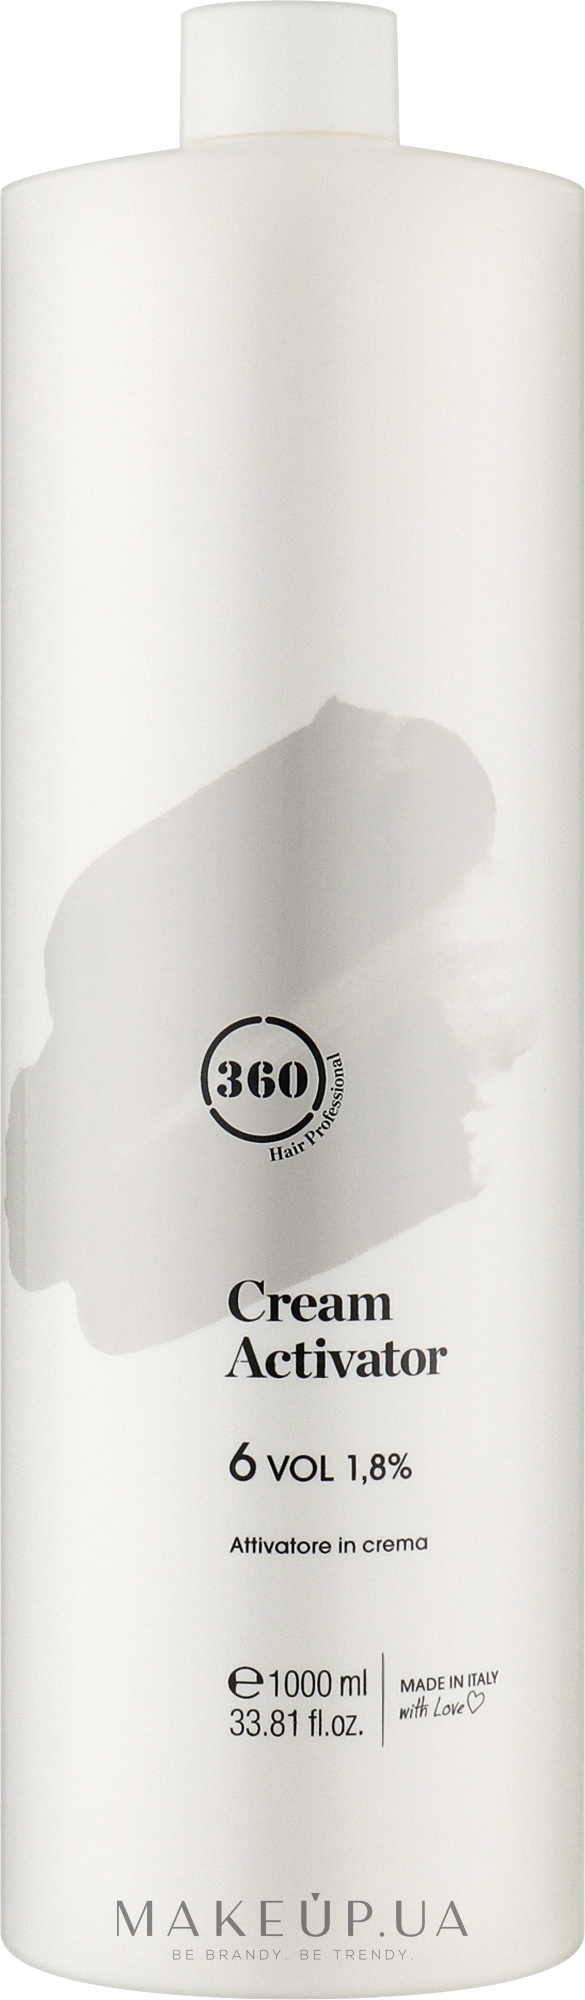 Крем-активатор 6 - 360 Cream Activator 6 Vol 1.8% — фото 1000ml